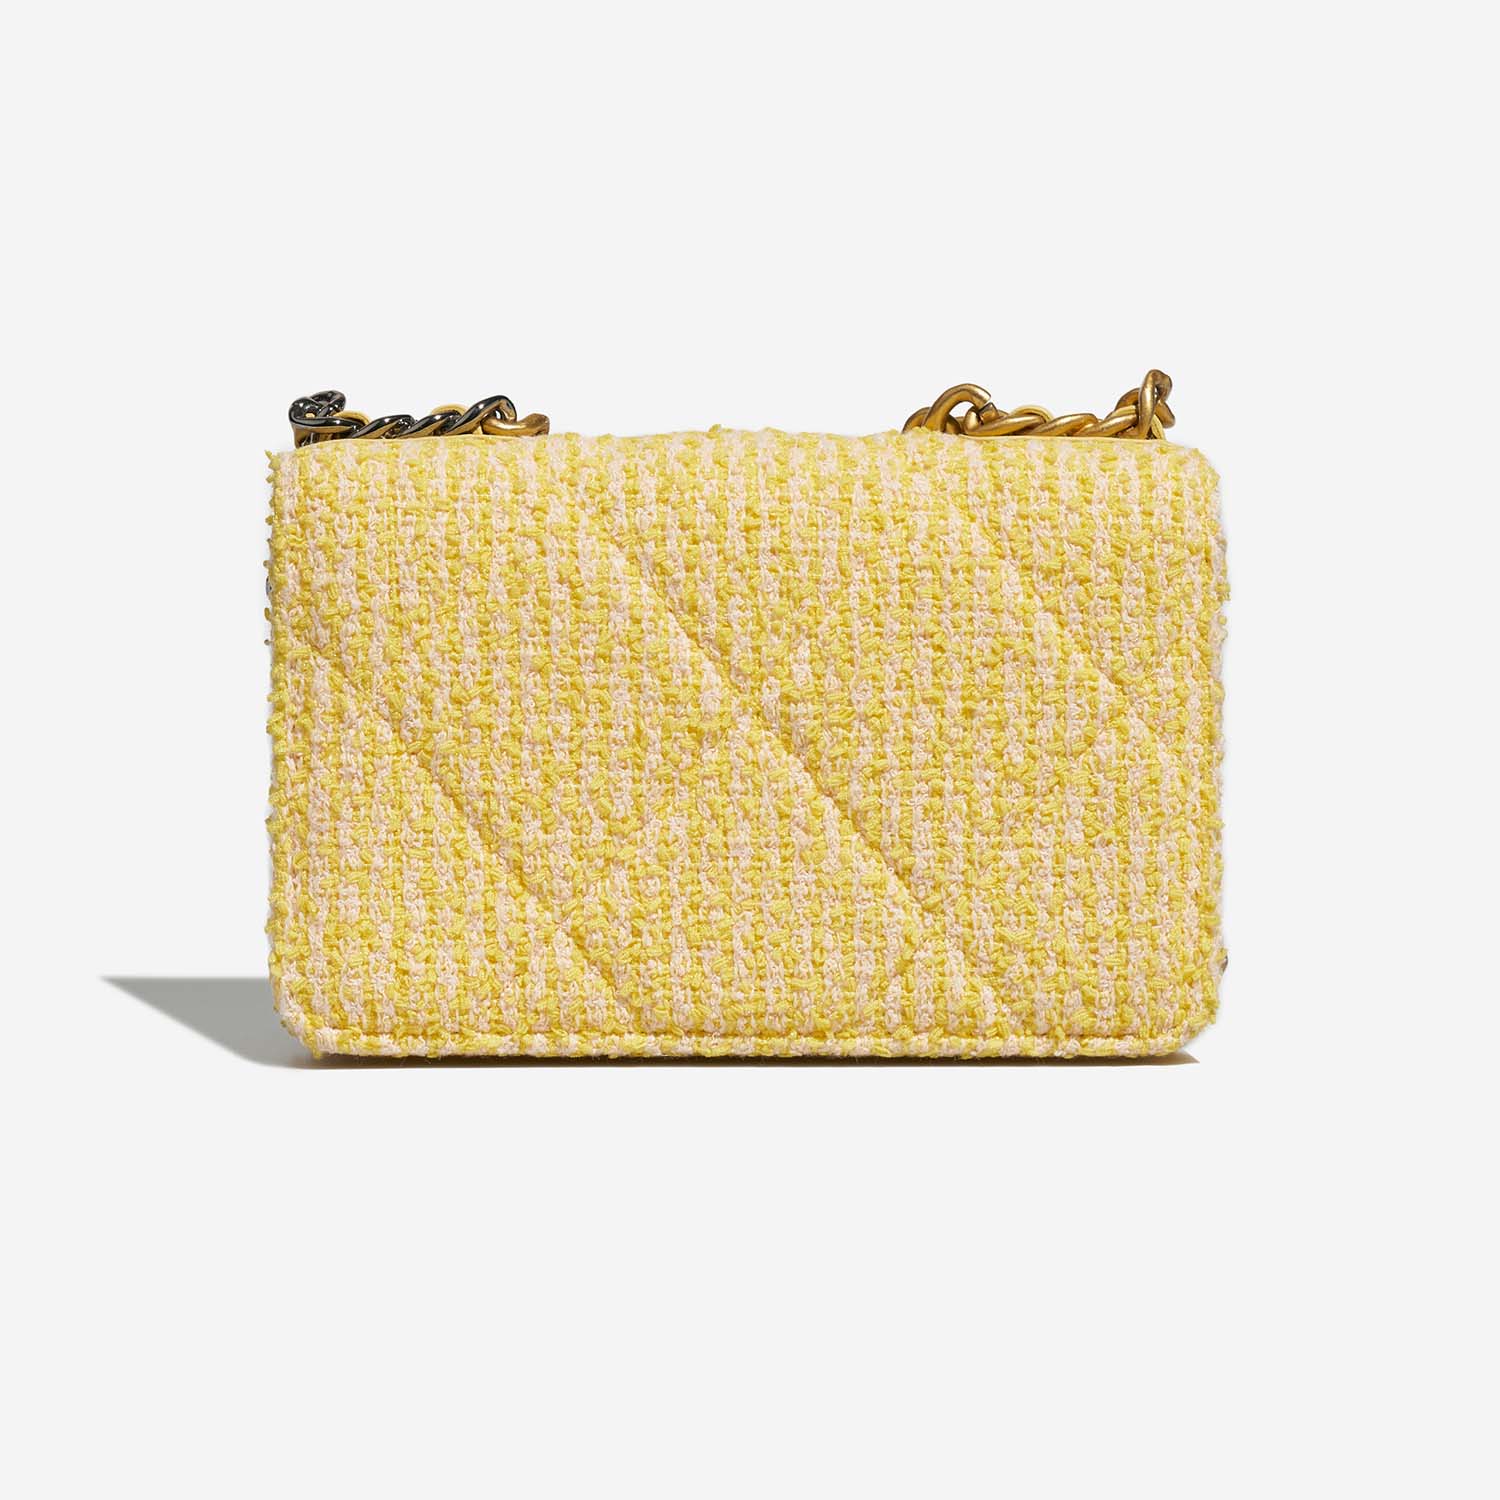 Chanel 19 WOC Gelb-Beige Back | Verkaufen Sie Ihre Designer-Tasche auf Saclab.com